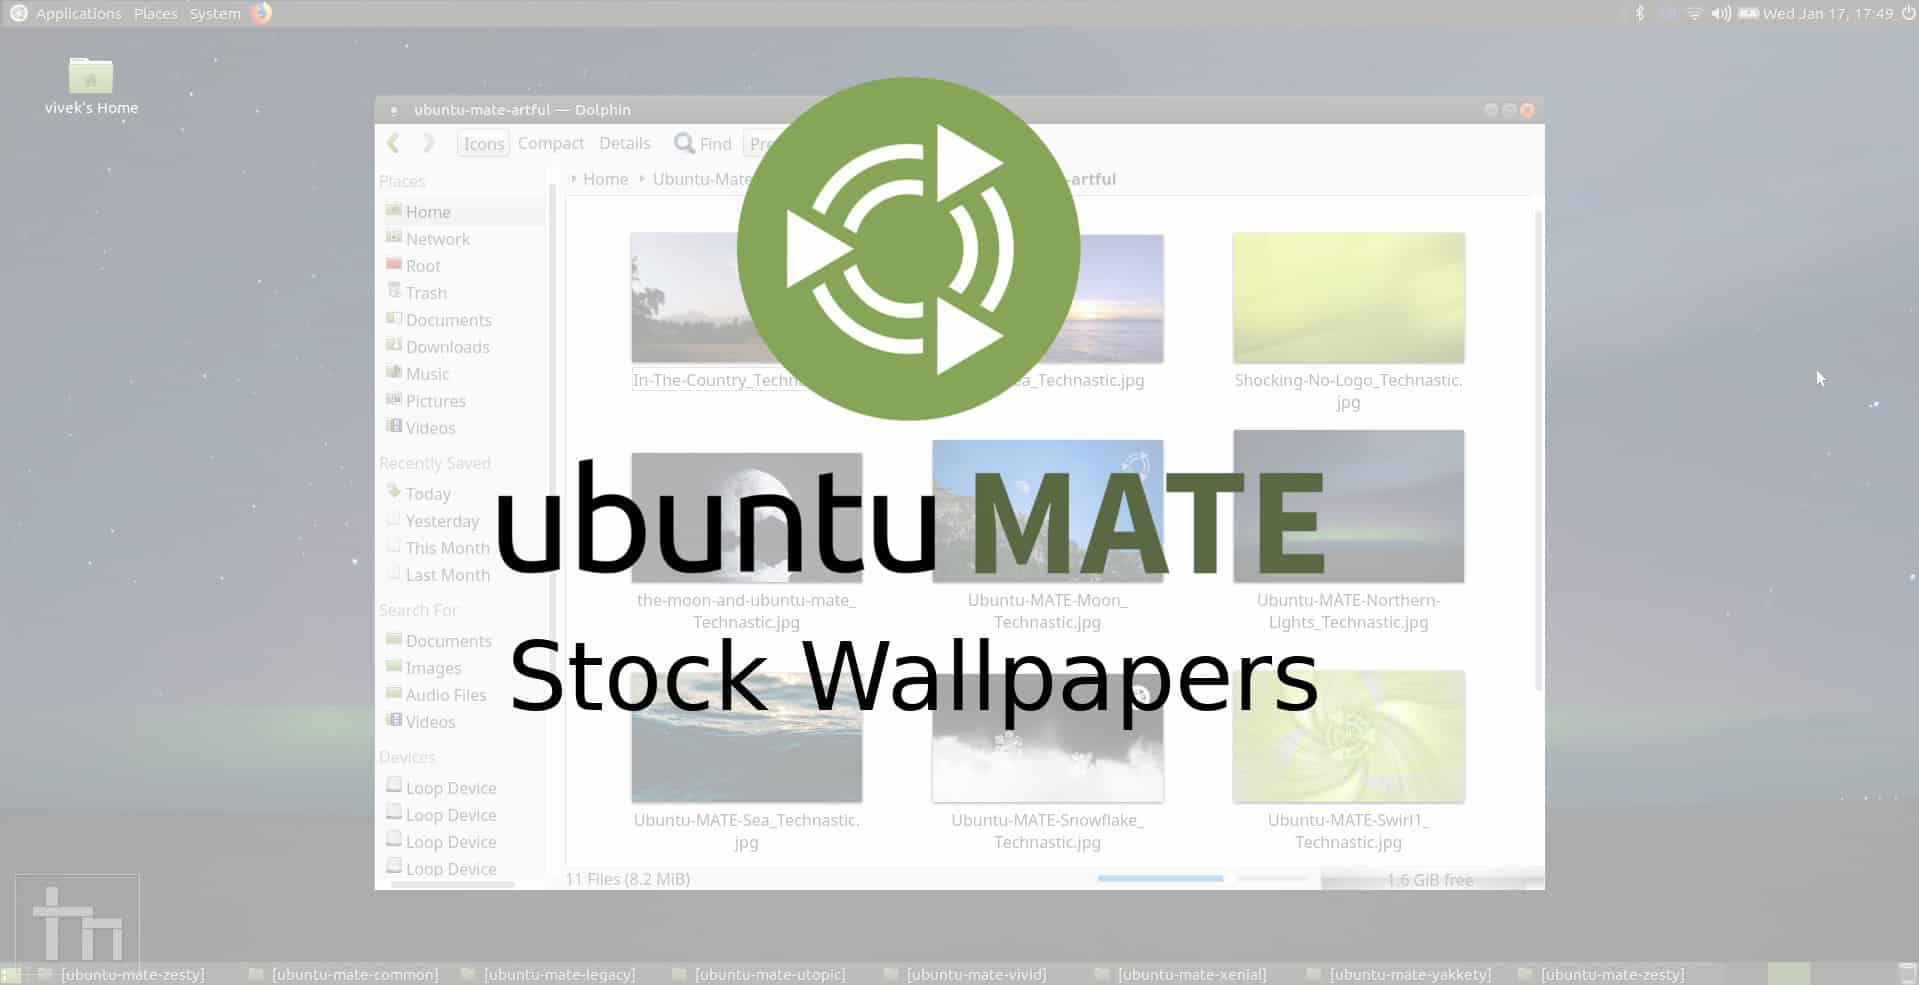 Ubuntu MATE Stock Wallpapers